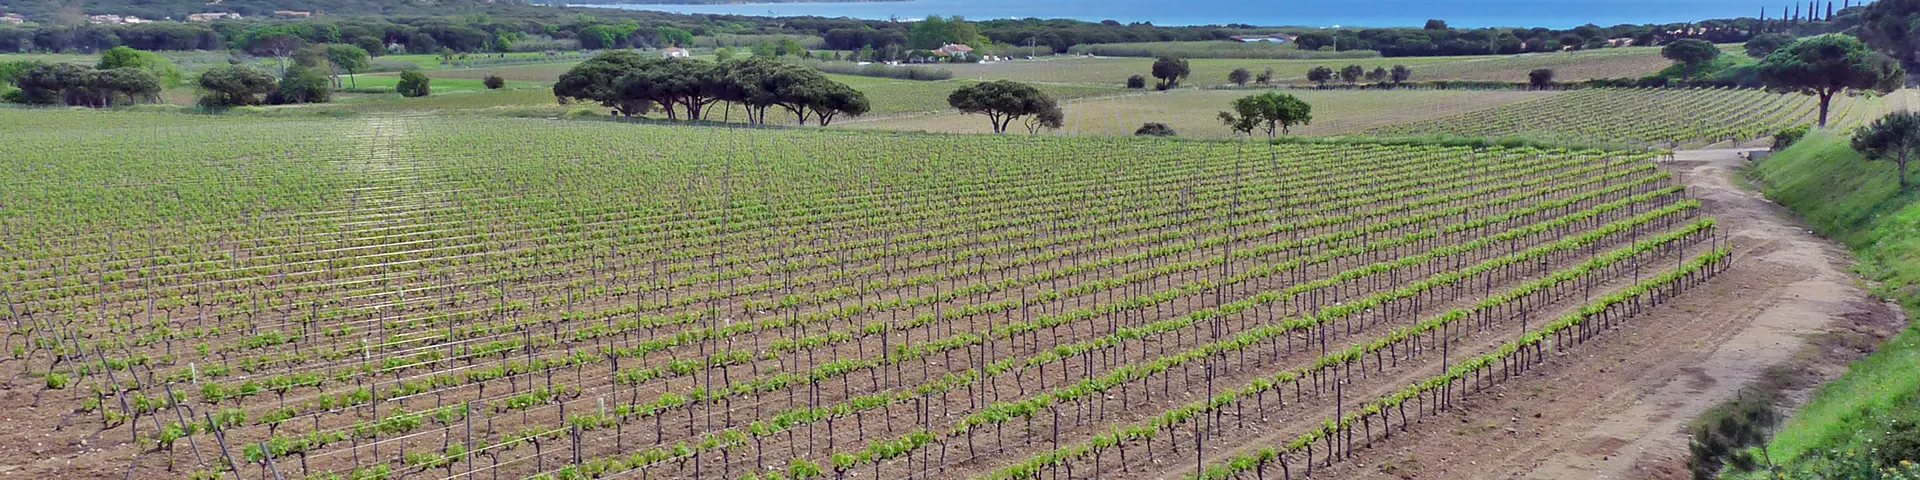 Vignes près de Ramatuelle dans le massif des Maures, terroir argilo-siliceux en Provence cristalline.